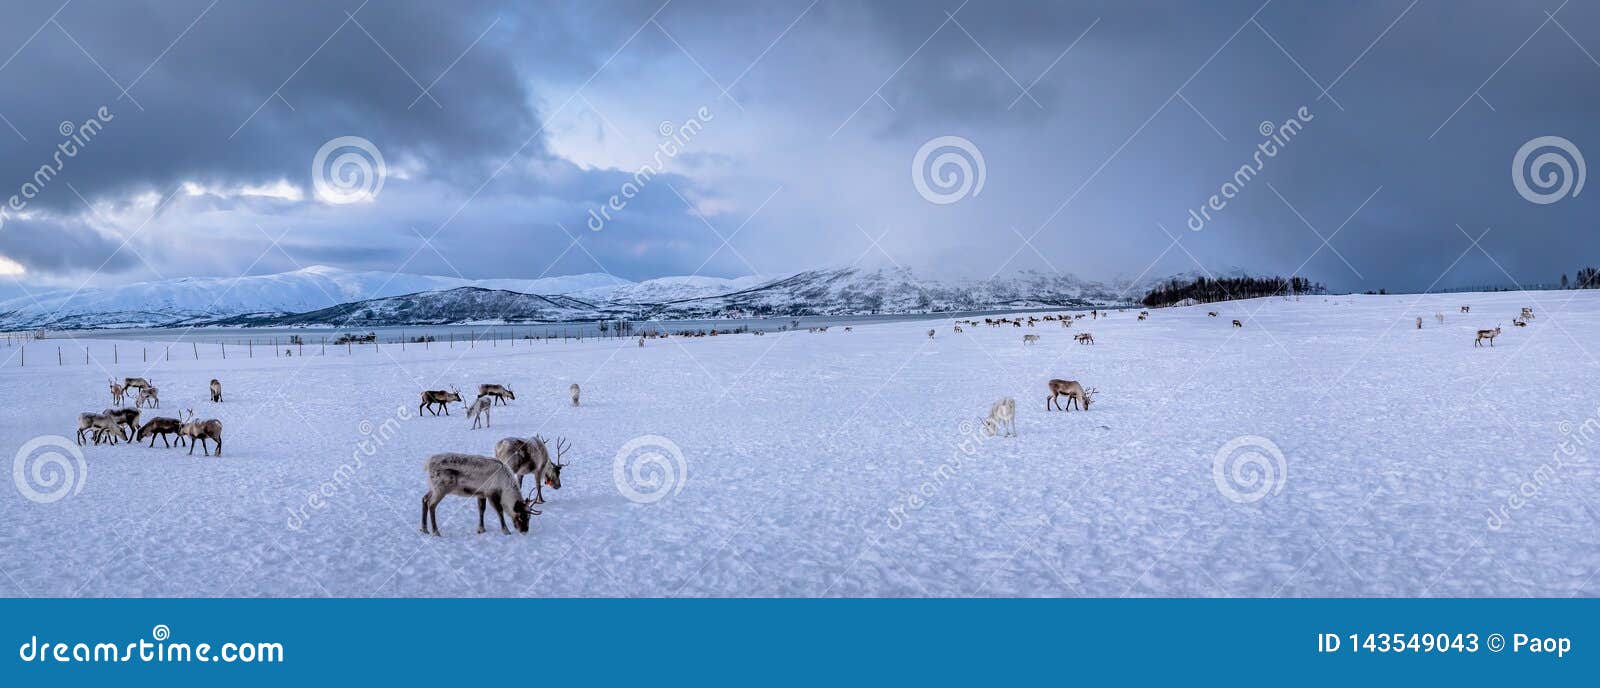 Panorama van rendieren in een de winterlandschap. Panorama van het landschap van de bergwinter met Rendieren die in sneeuw, Tromso-gebied, Noordelijk Noorwegen wandelen